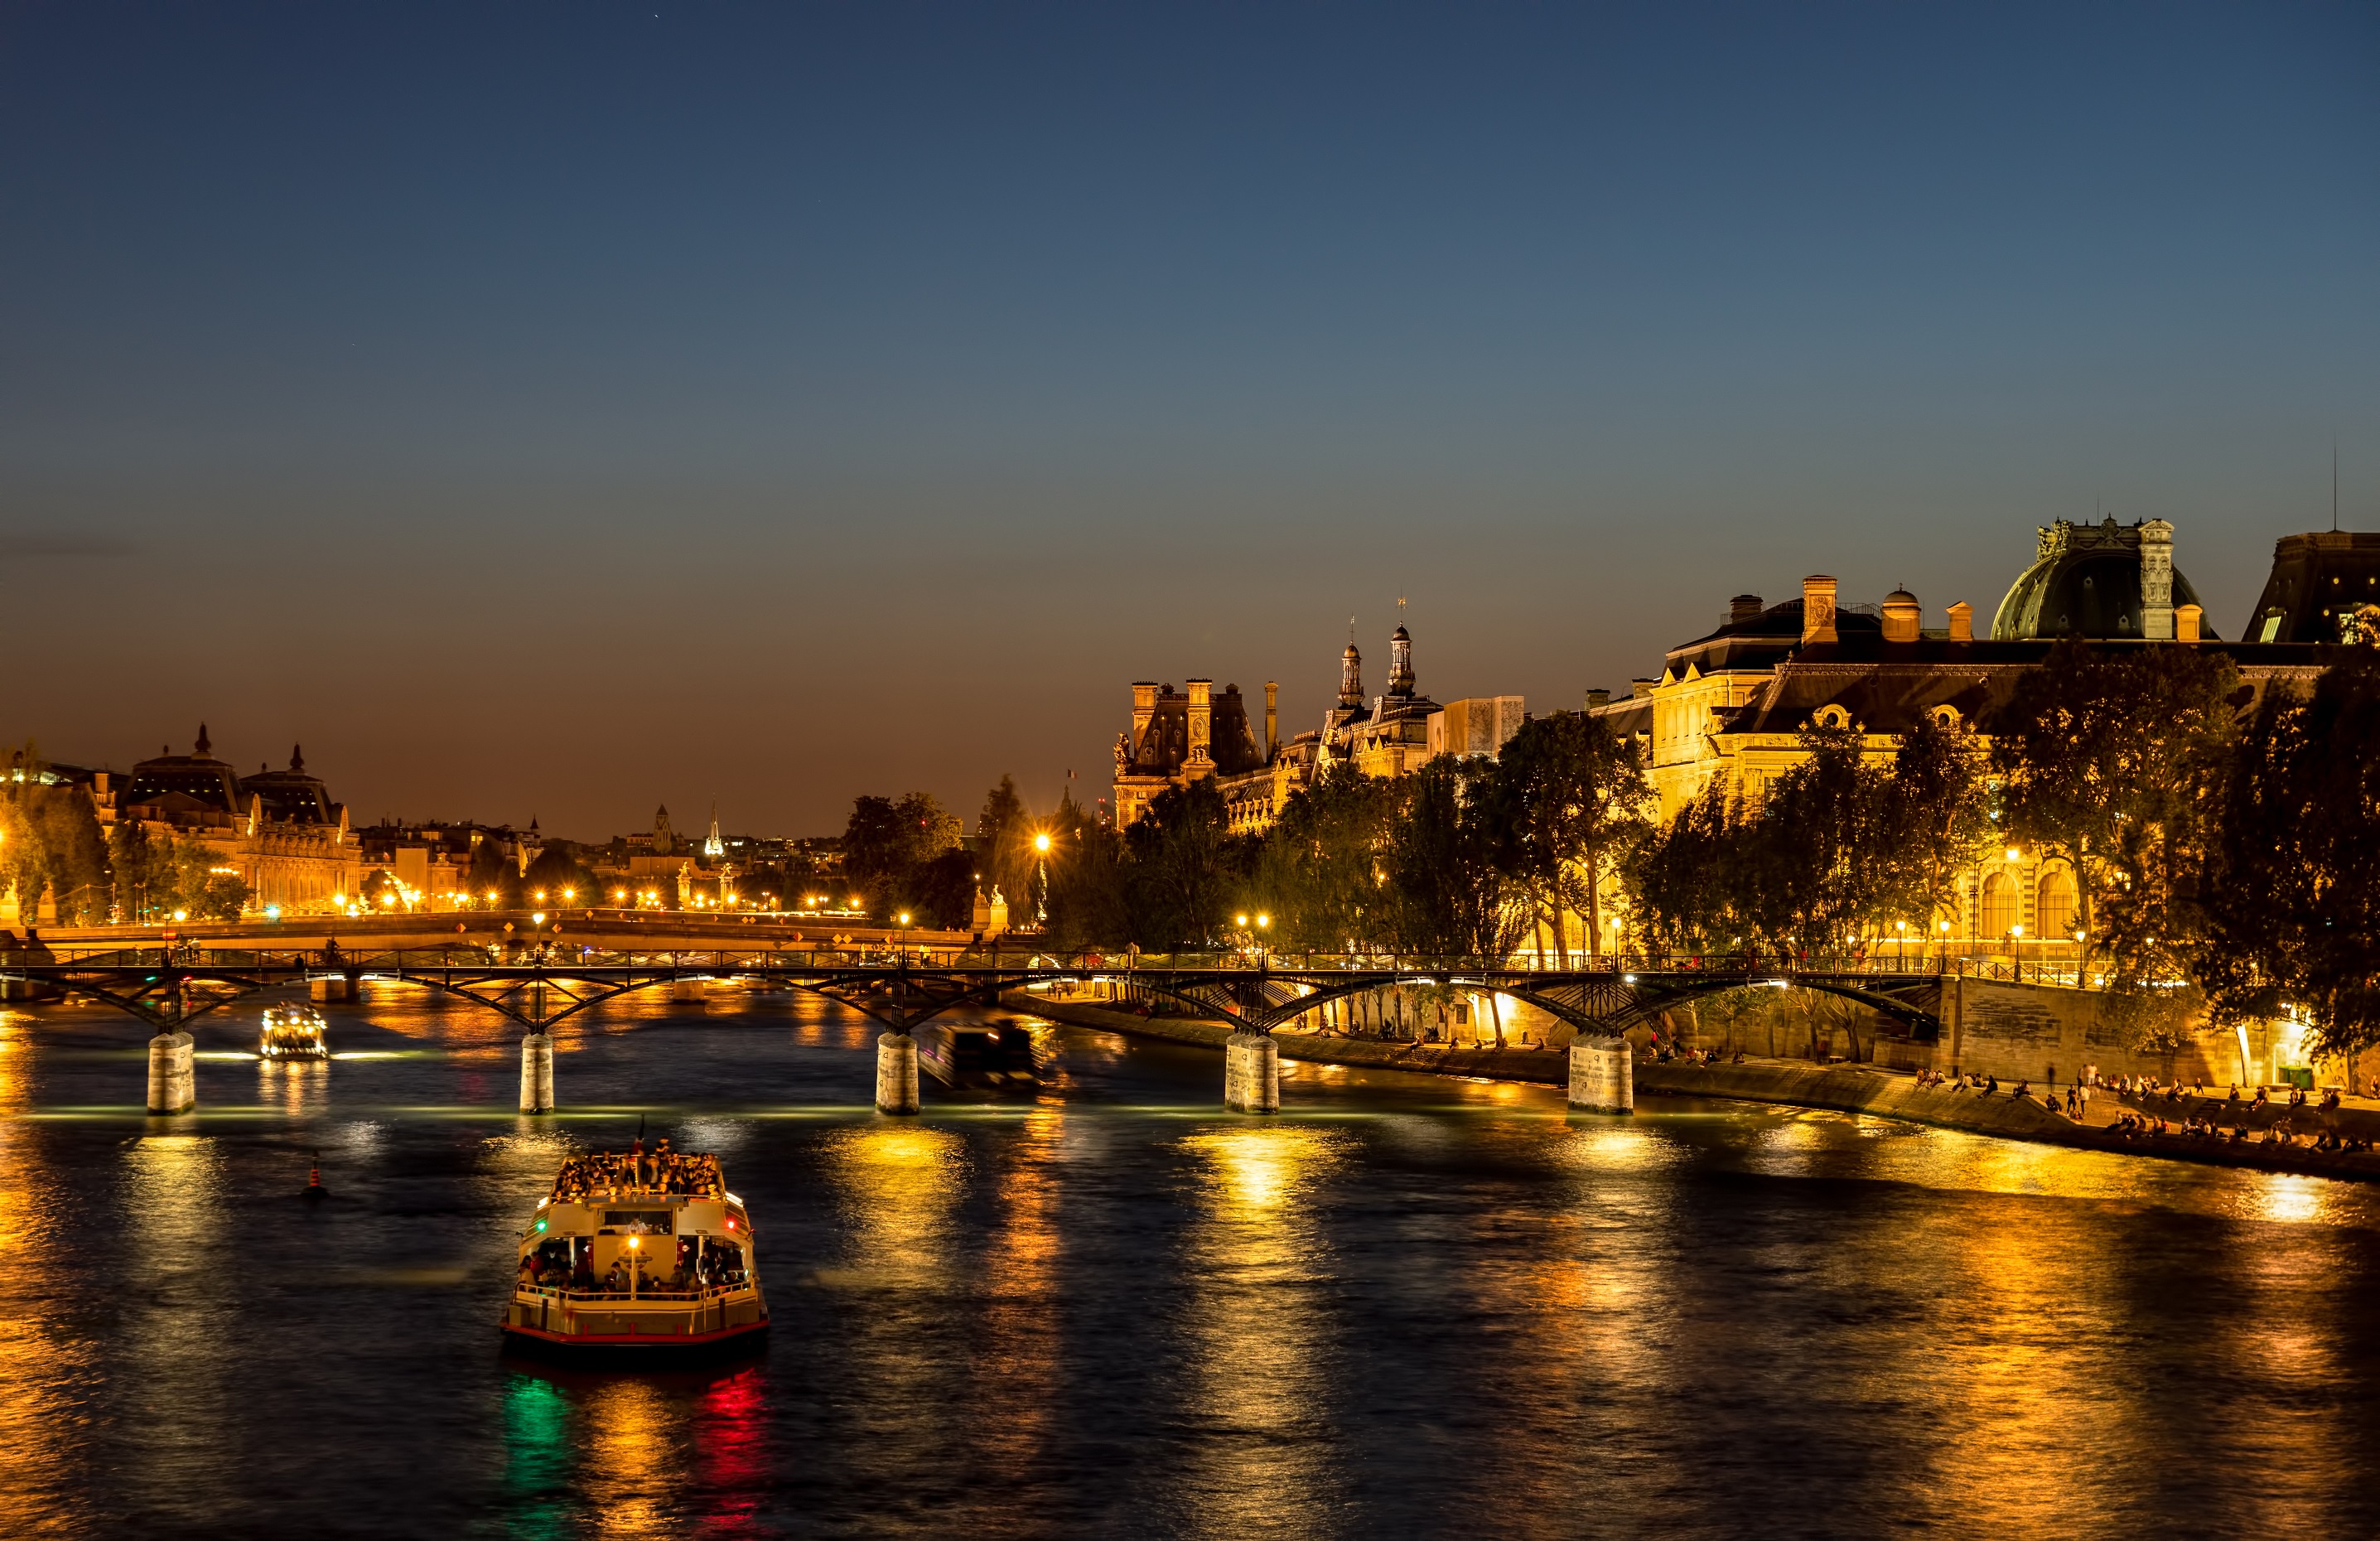 Parisian images of the Pont des Arts